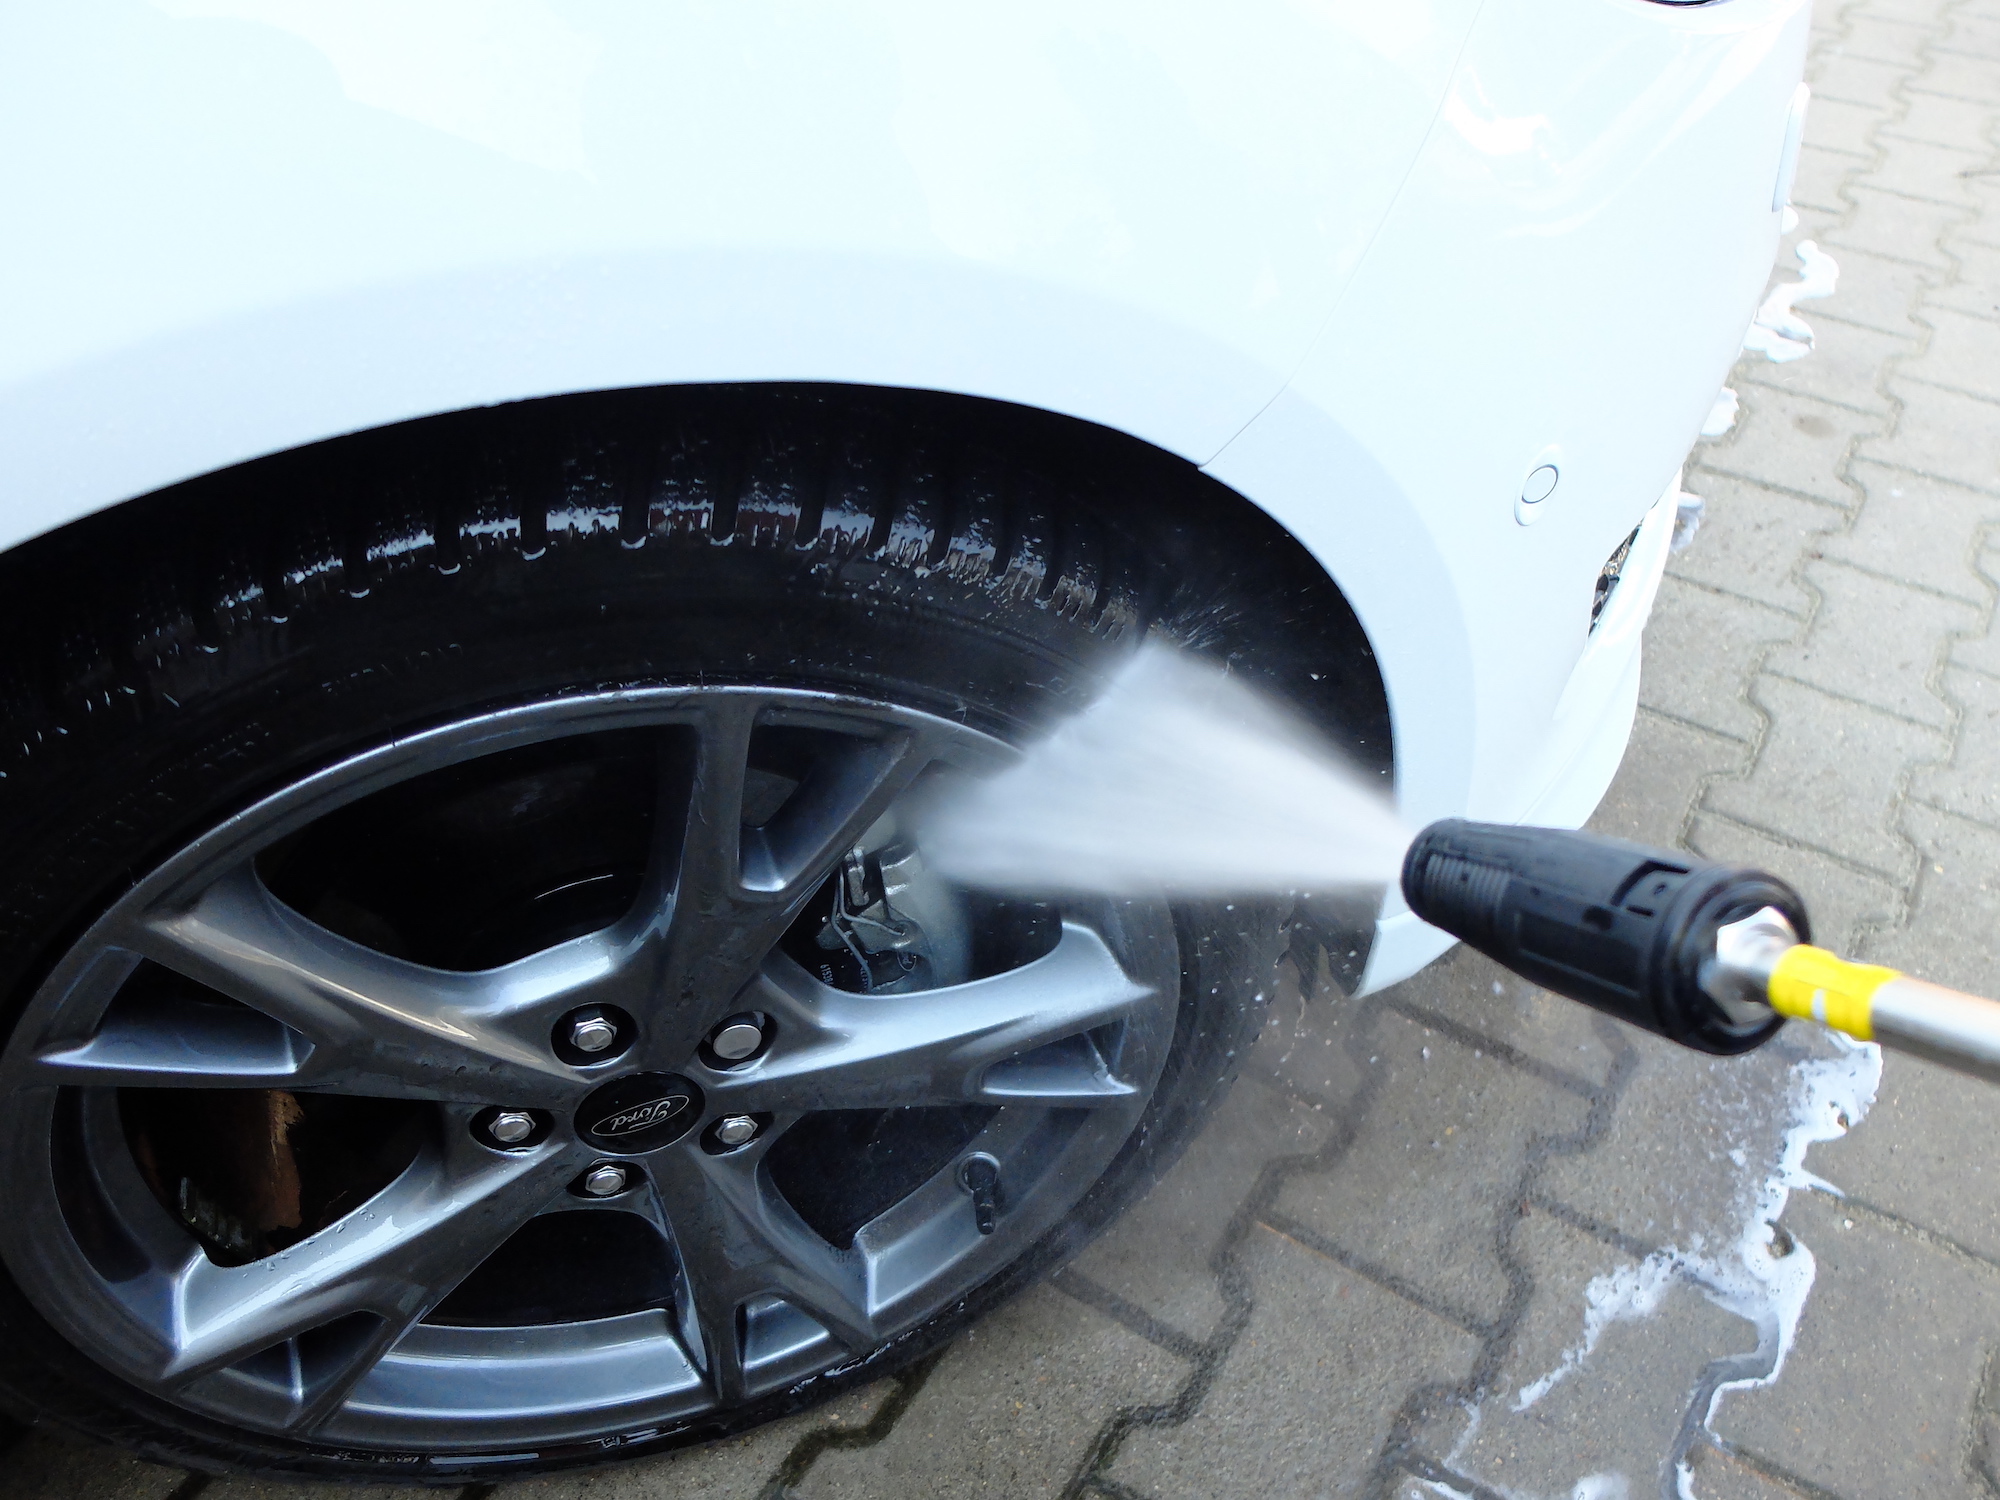 Jak wybrać dobrą myjkę ciśnieniową do auta?